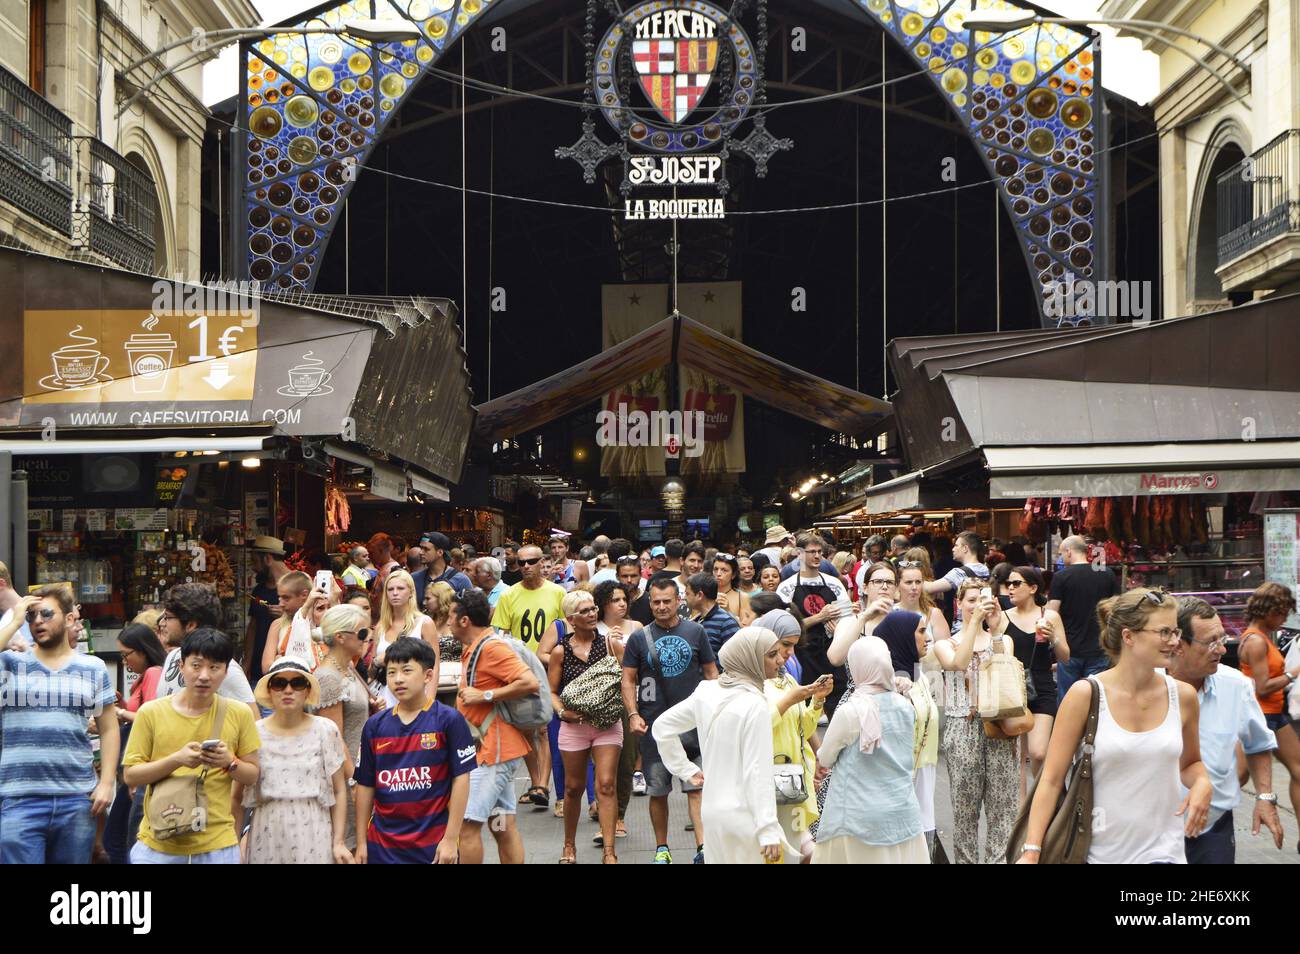 Crowd of shoppers, main entrance to La Boqueria market, covered marketplace located at La Rambla in Ciutat Vella district of Barcelona Spain. Stock Photo